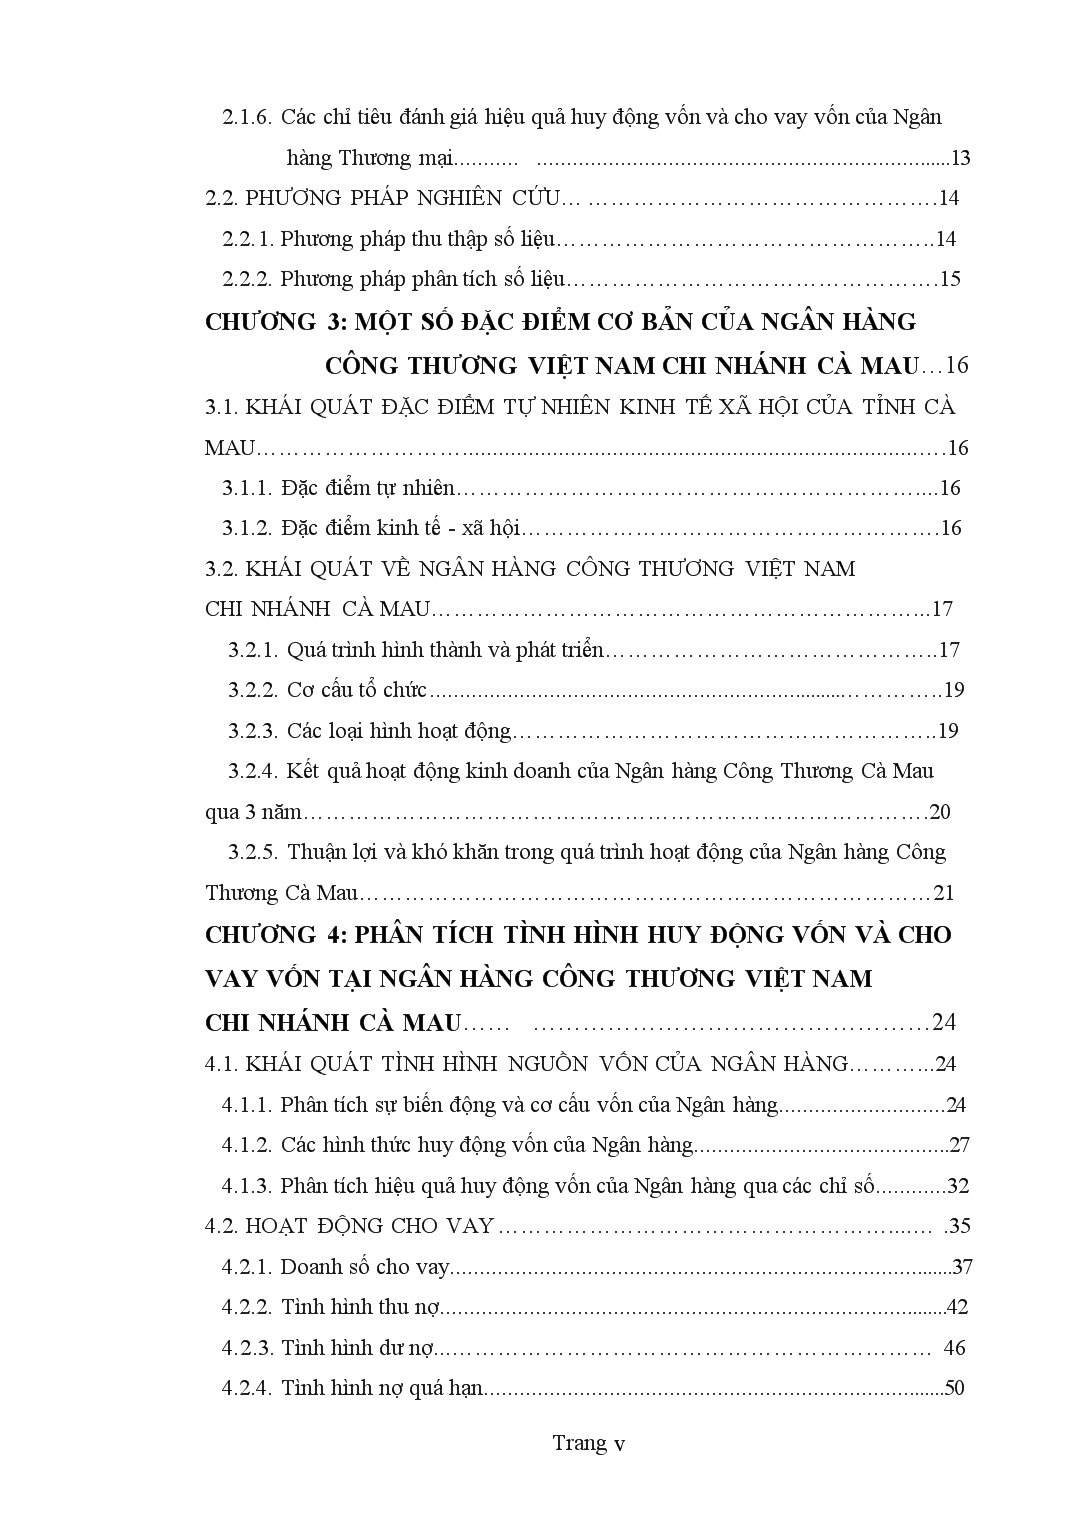 Luận văn Phân tích tình hình huy động và cho vay vốn tại ngân hàng công thương Việt Nam chi nhánh Cà Mau trang 5